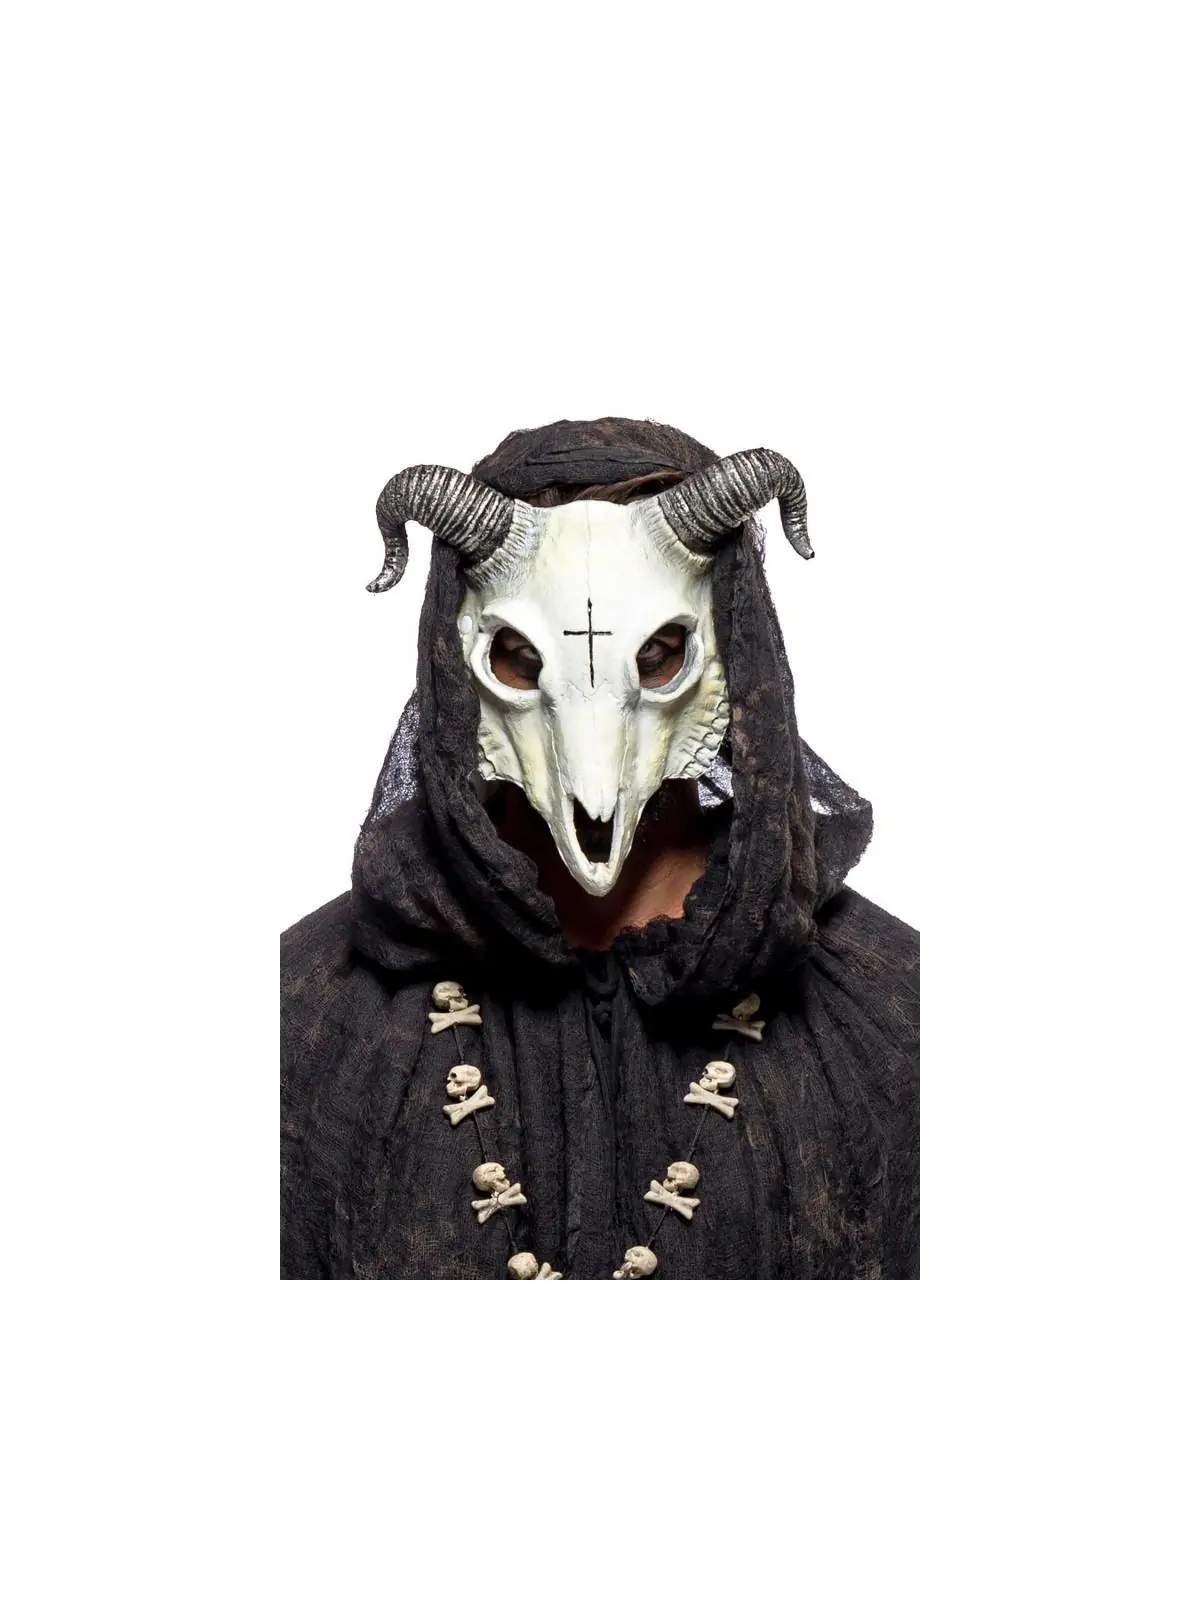 Goat Maske weiß/schwarz kaufen - Fesselliebe